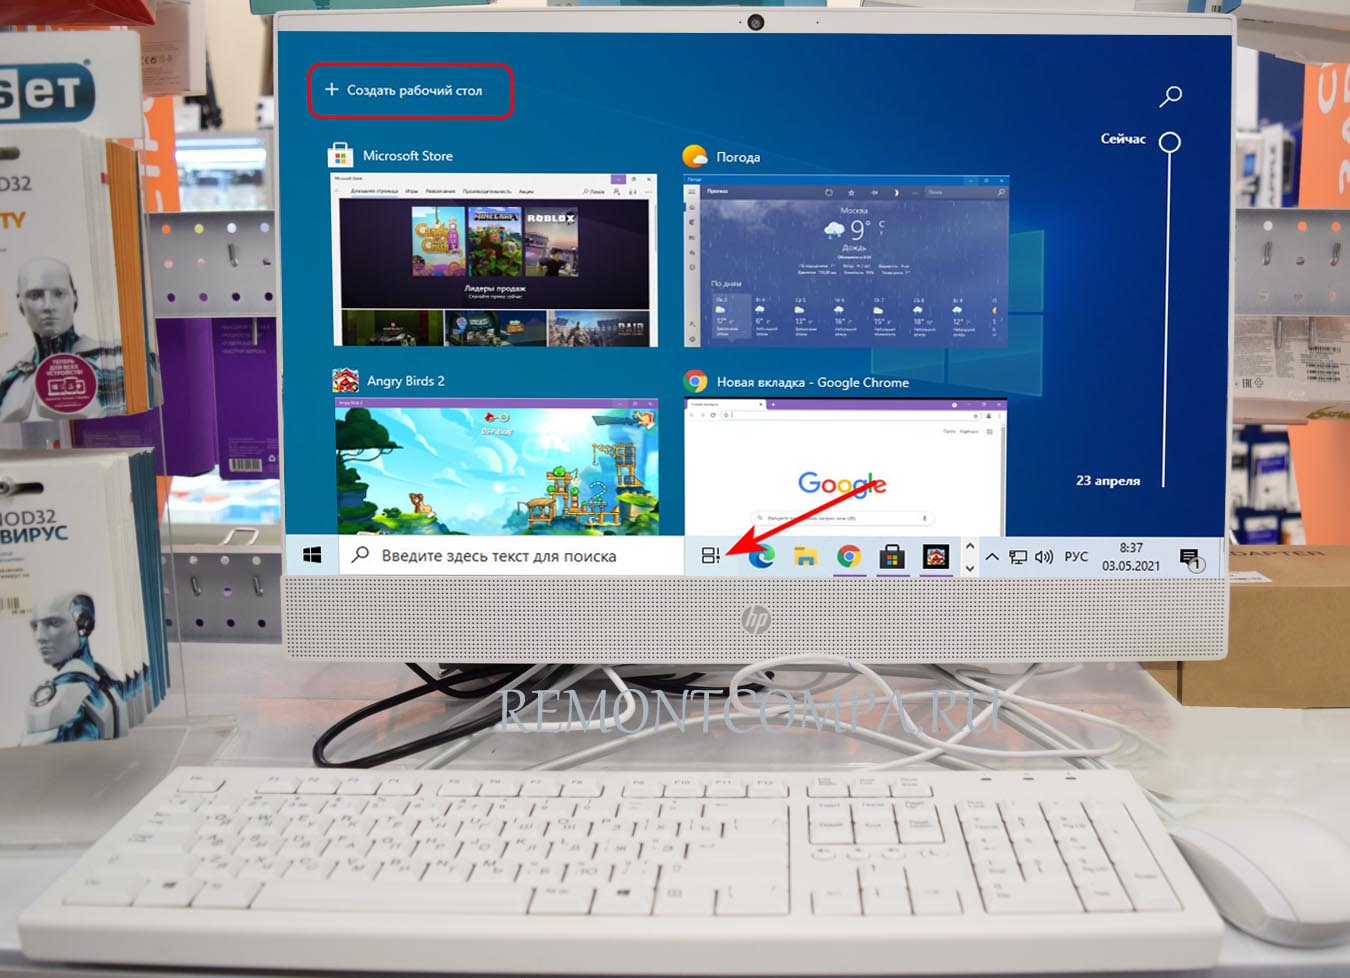 Виртуальные рабочие столы Windows 10